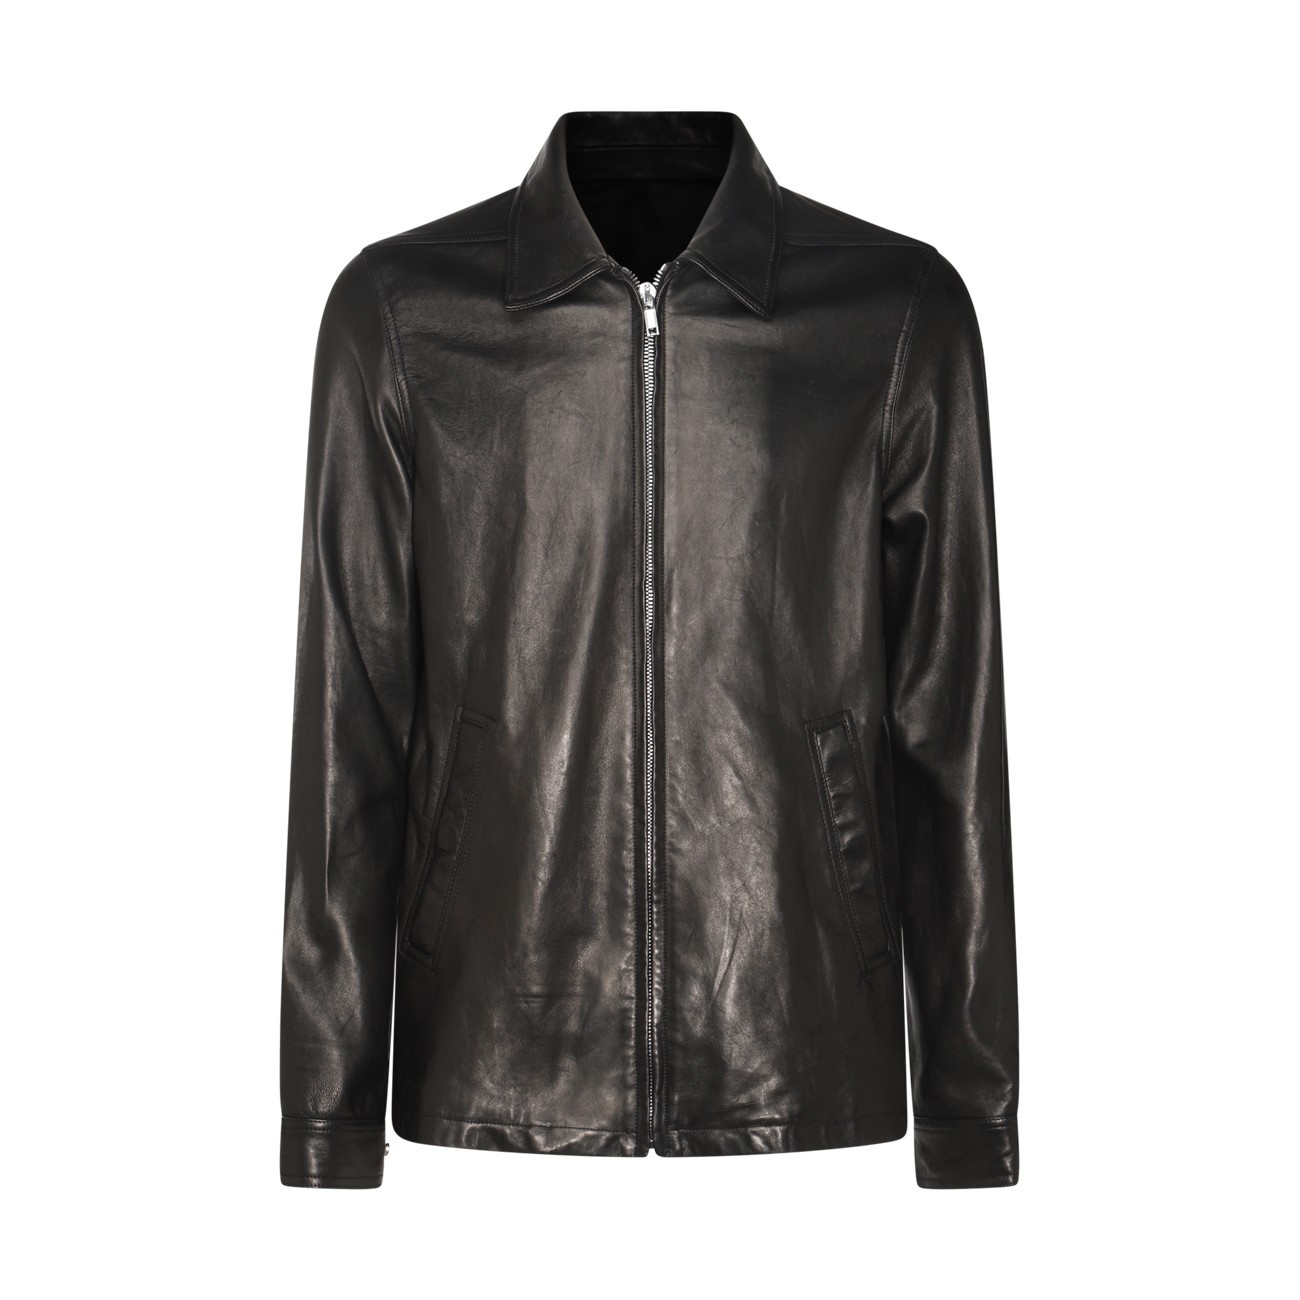 black leather jacket - 1